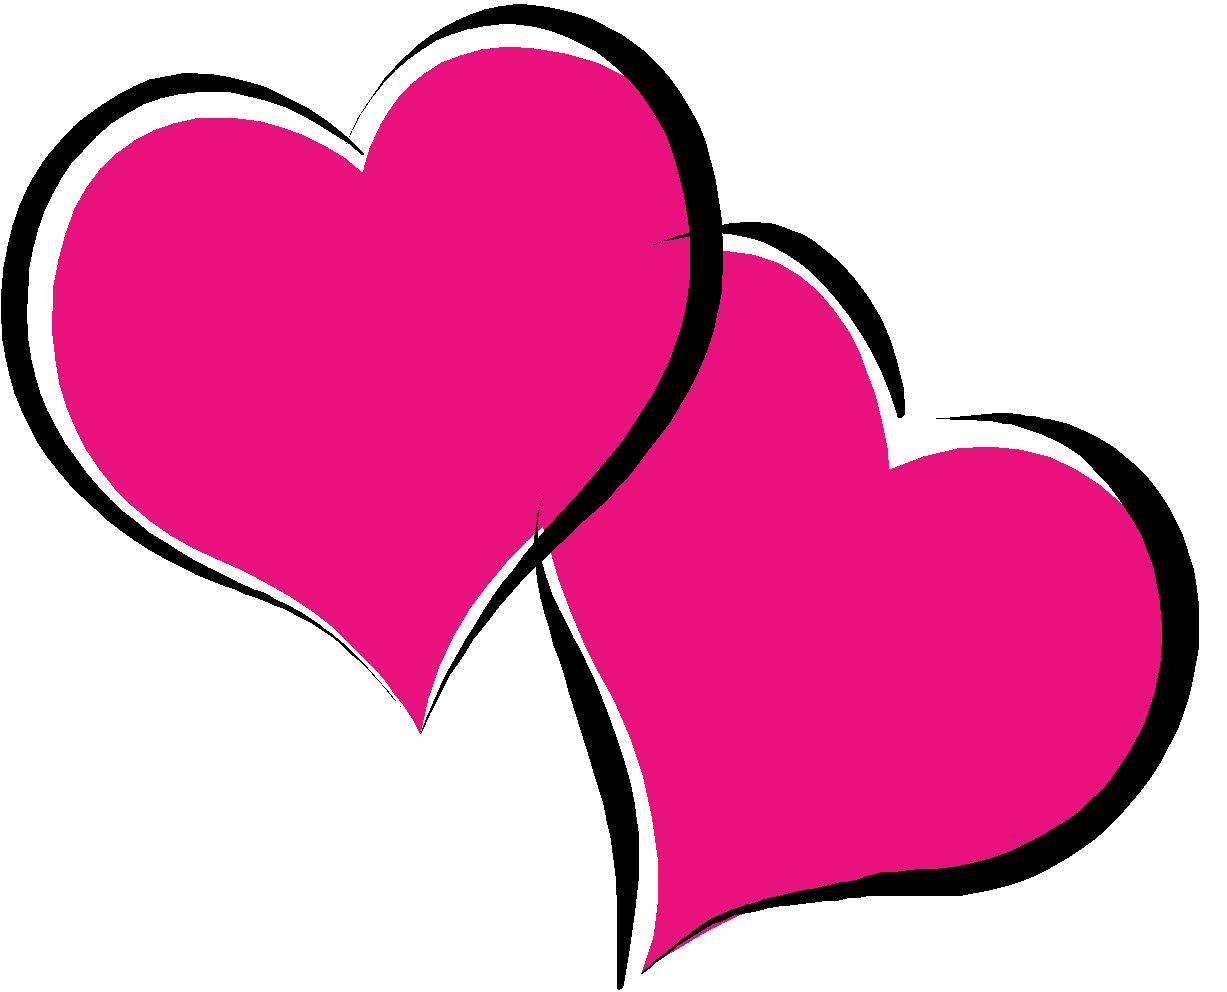 Sketchy Hearts clip art - Dow